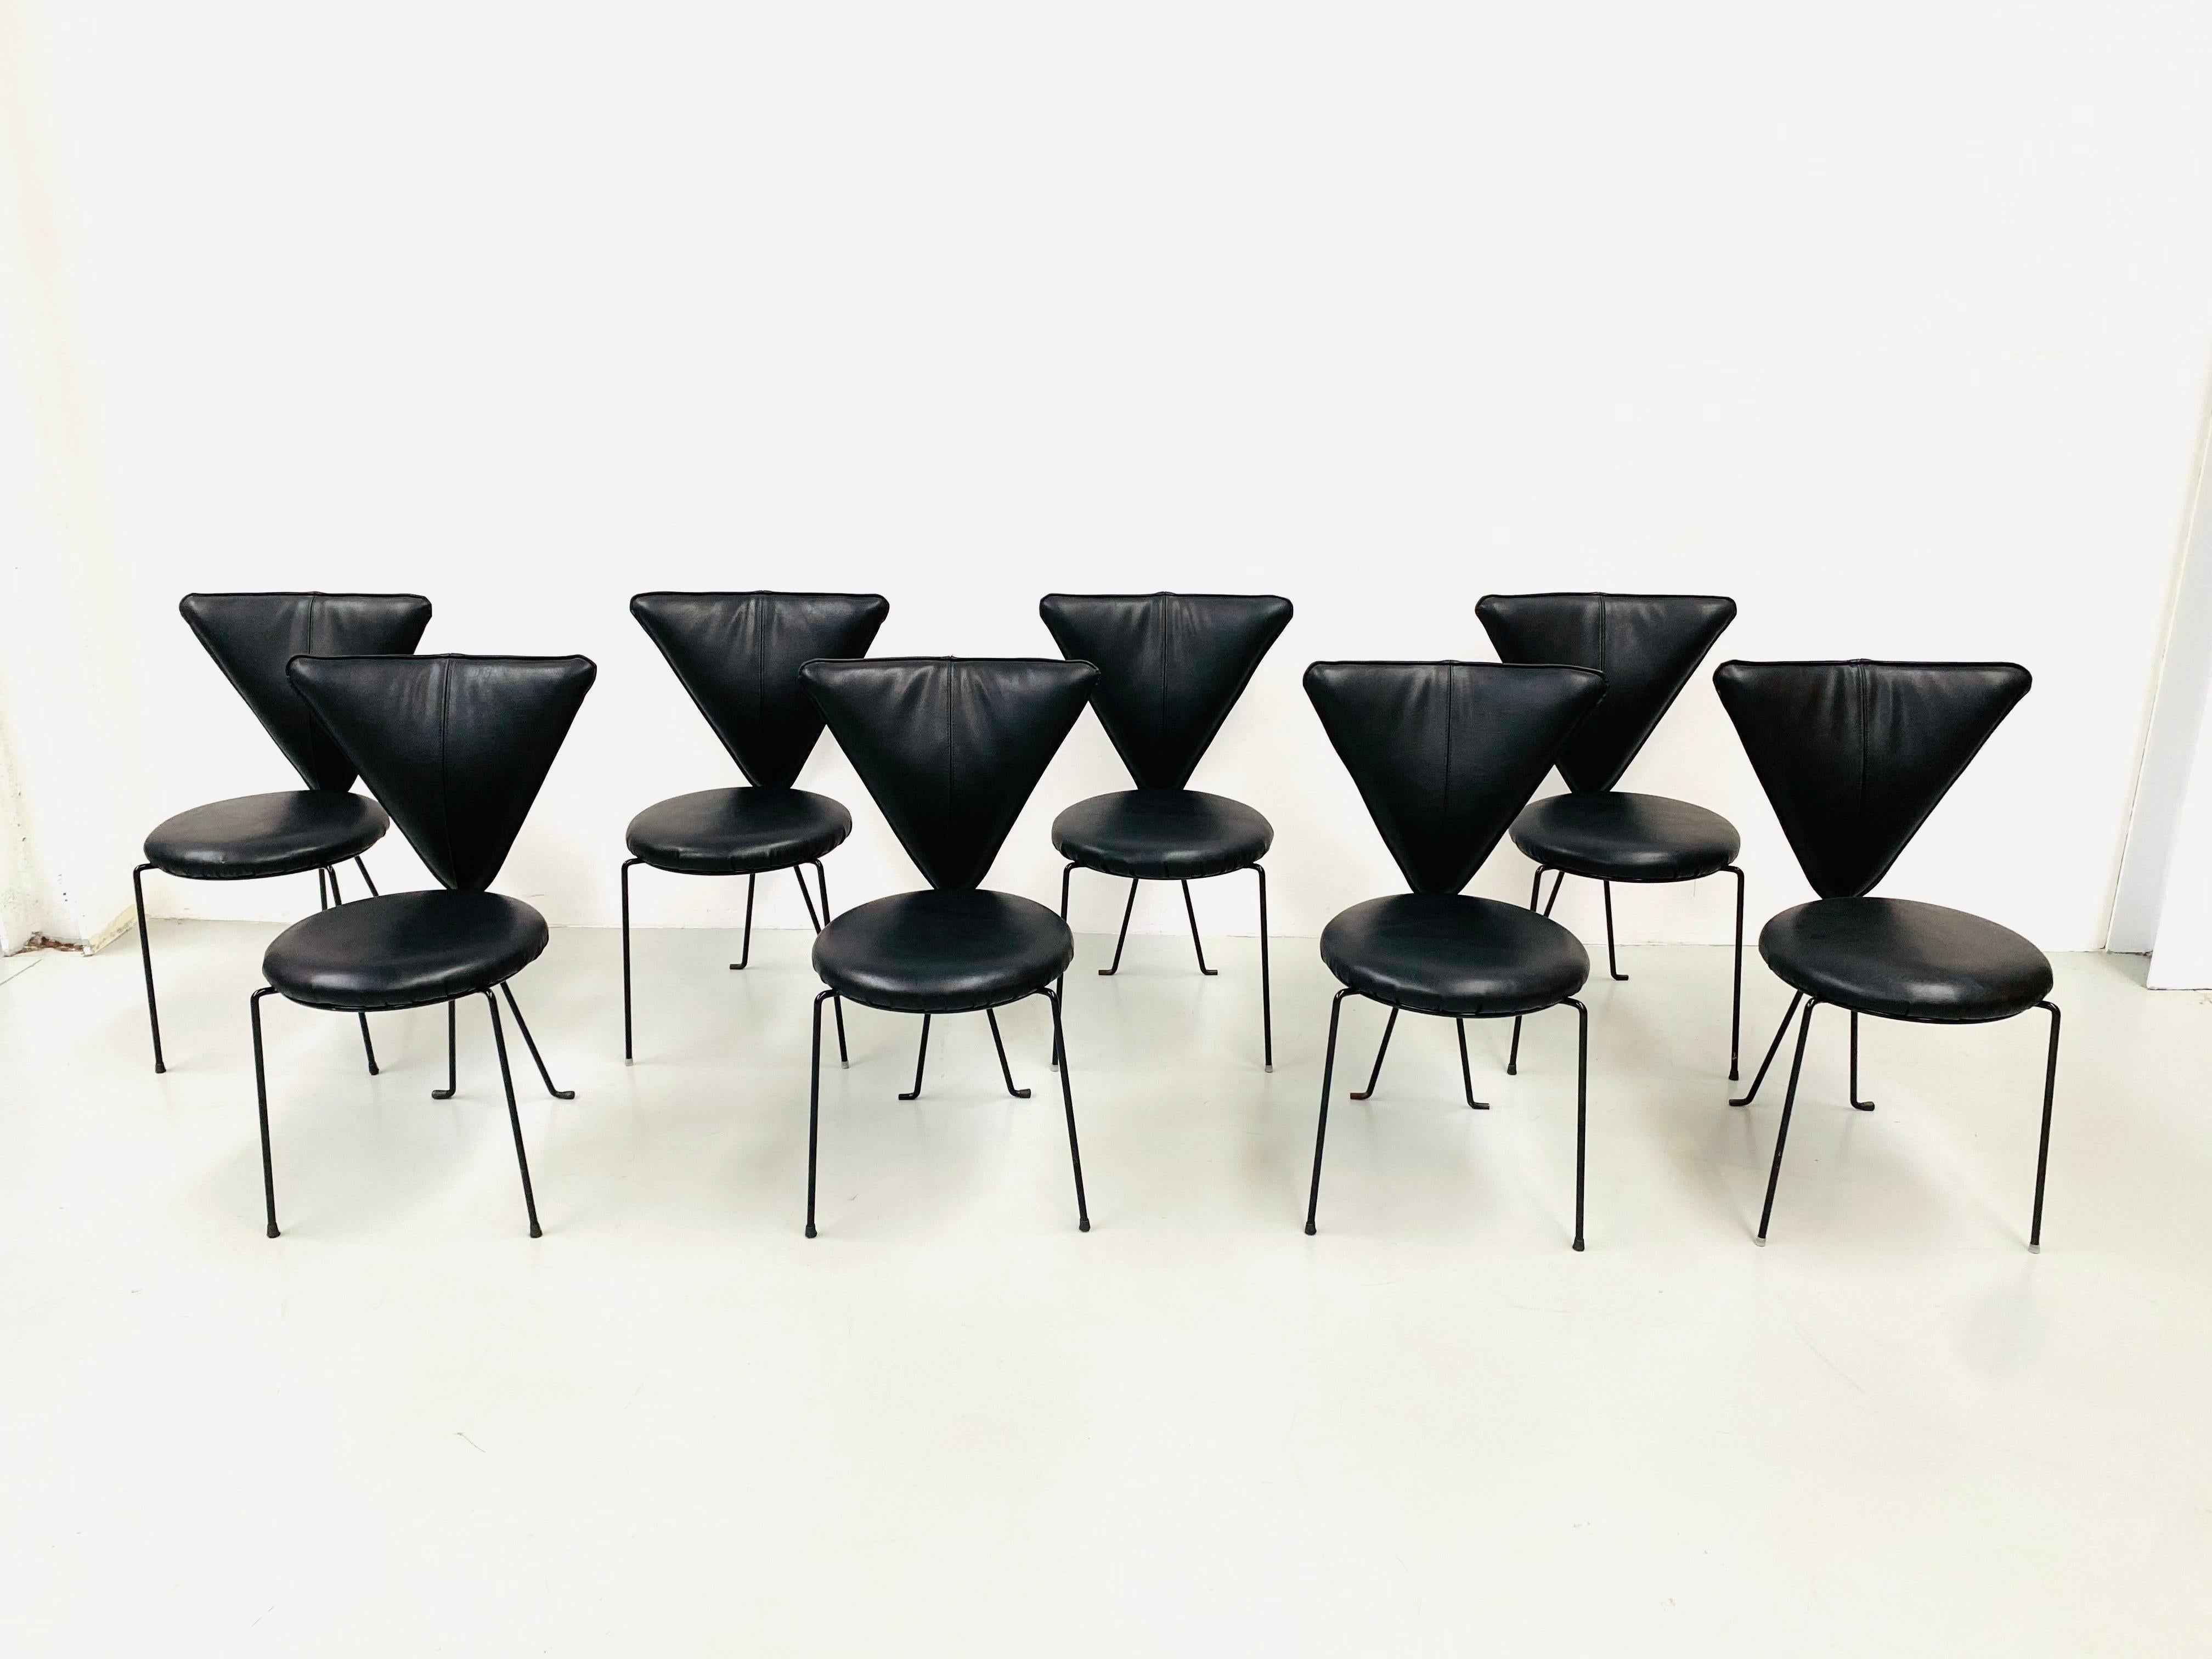 Ces 8 chaises ont été conçues et fabriquées par Helmut Lübke dans les années quatre-vingt. Chaque chaise porte son propre numéro de série et le logo Lübke est apposé sous l'assise. Helmut Lübke est également le fondateur du fabricant de meubles